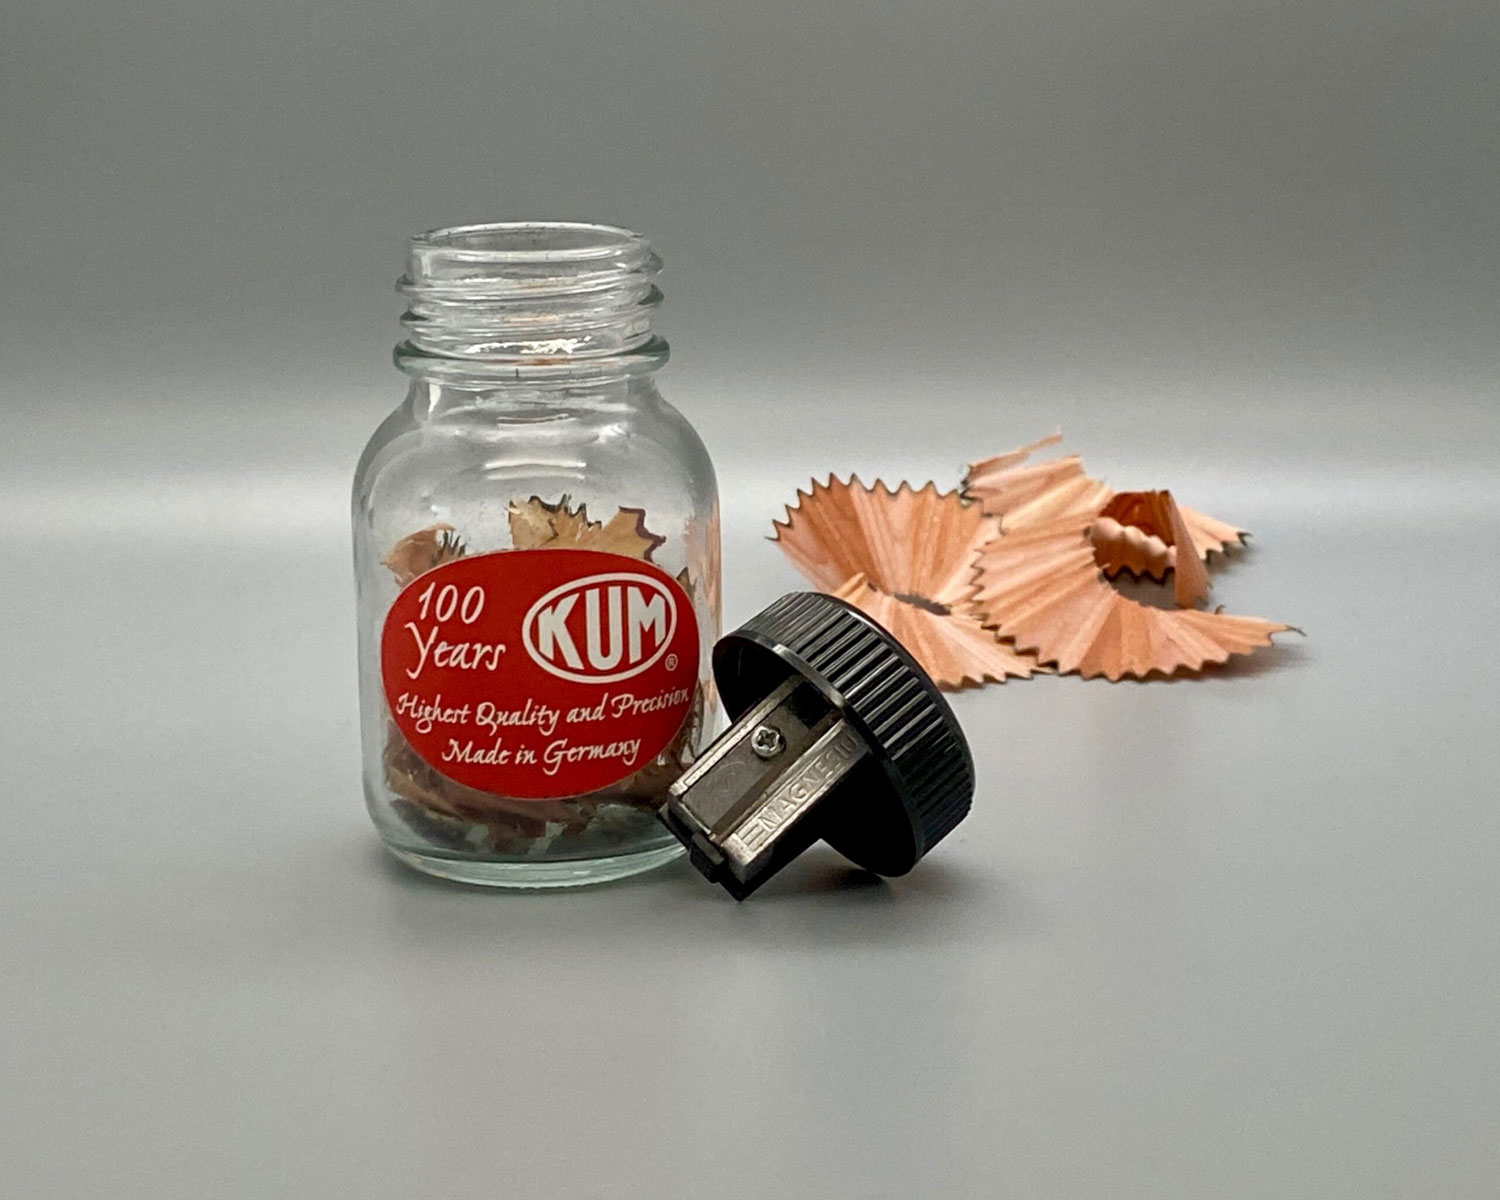 kum glass bottle sharpener